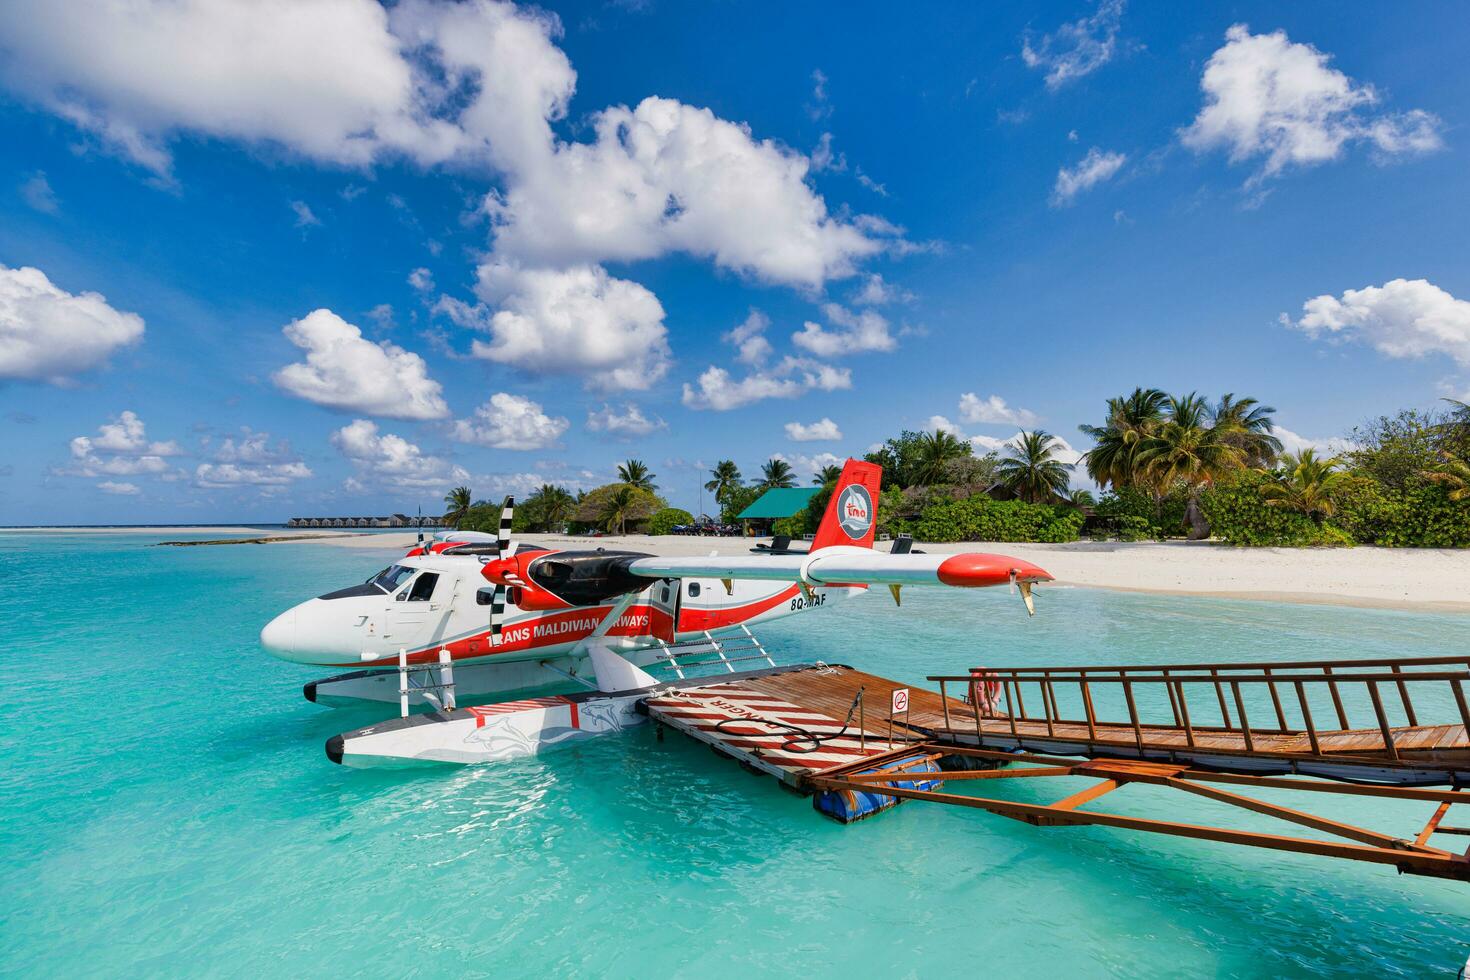 02.05.22, atolón ari, maldivas trans maldivian airways twin otter hidroaviones en el aeropuerto masculino mle en las maldivas. estacionamiento de hidroaviones junto al muelle de madera flotante, maldivas foto